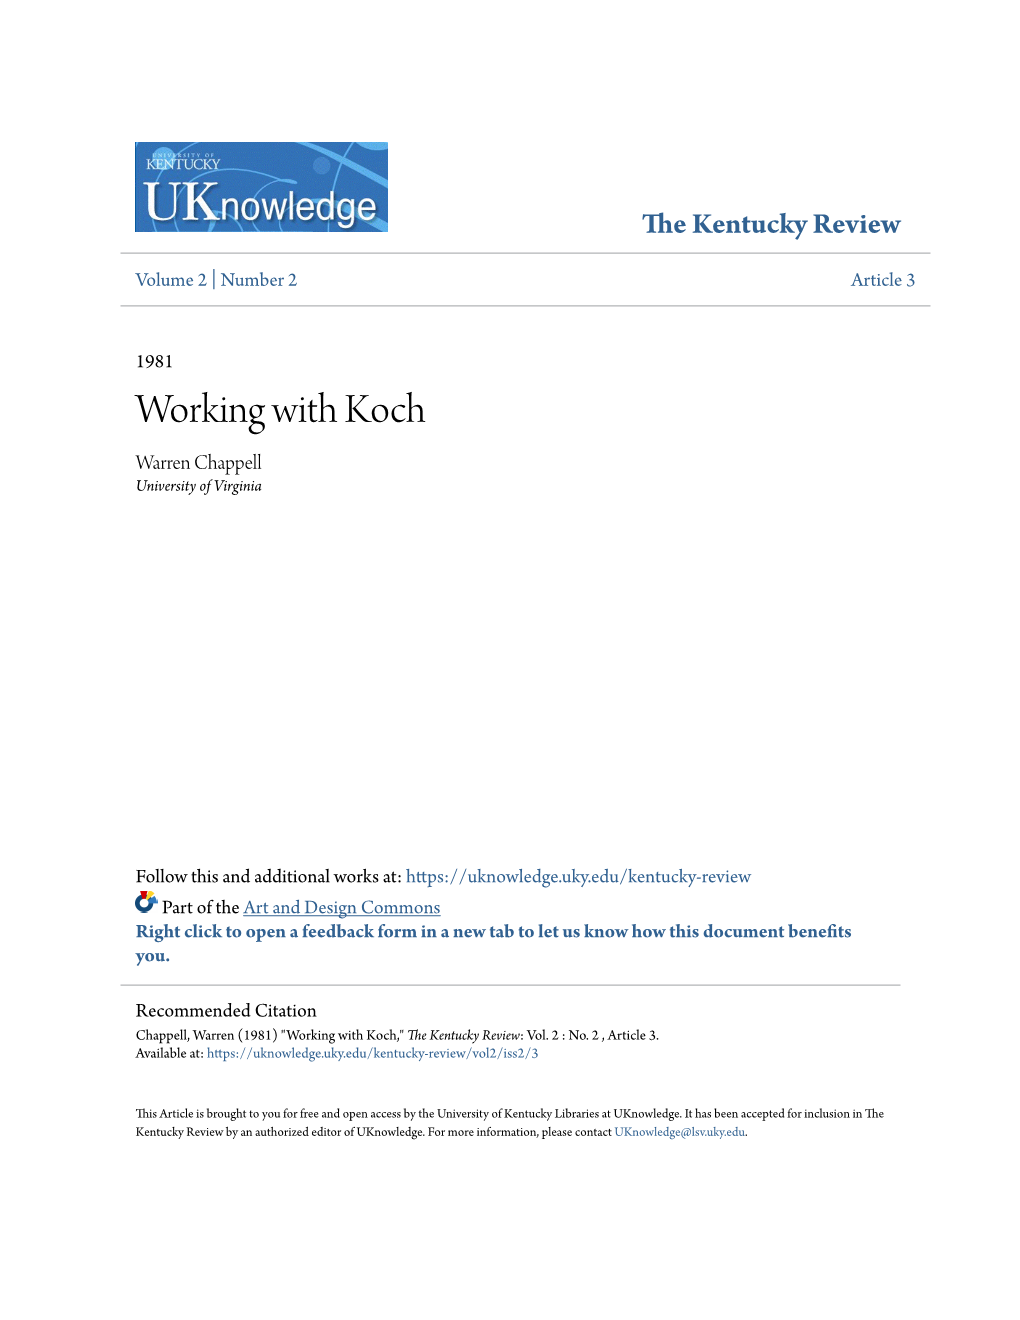 Working with Koch Warren Chappell University of Virginia